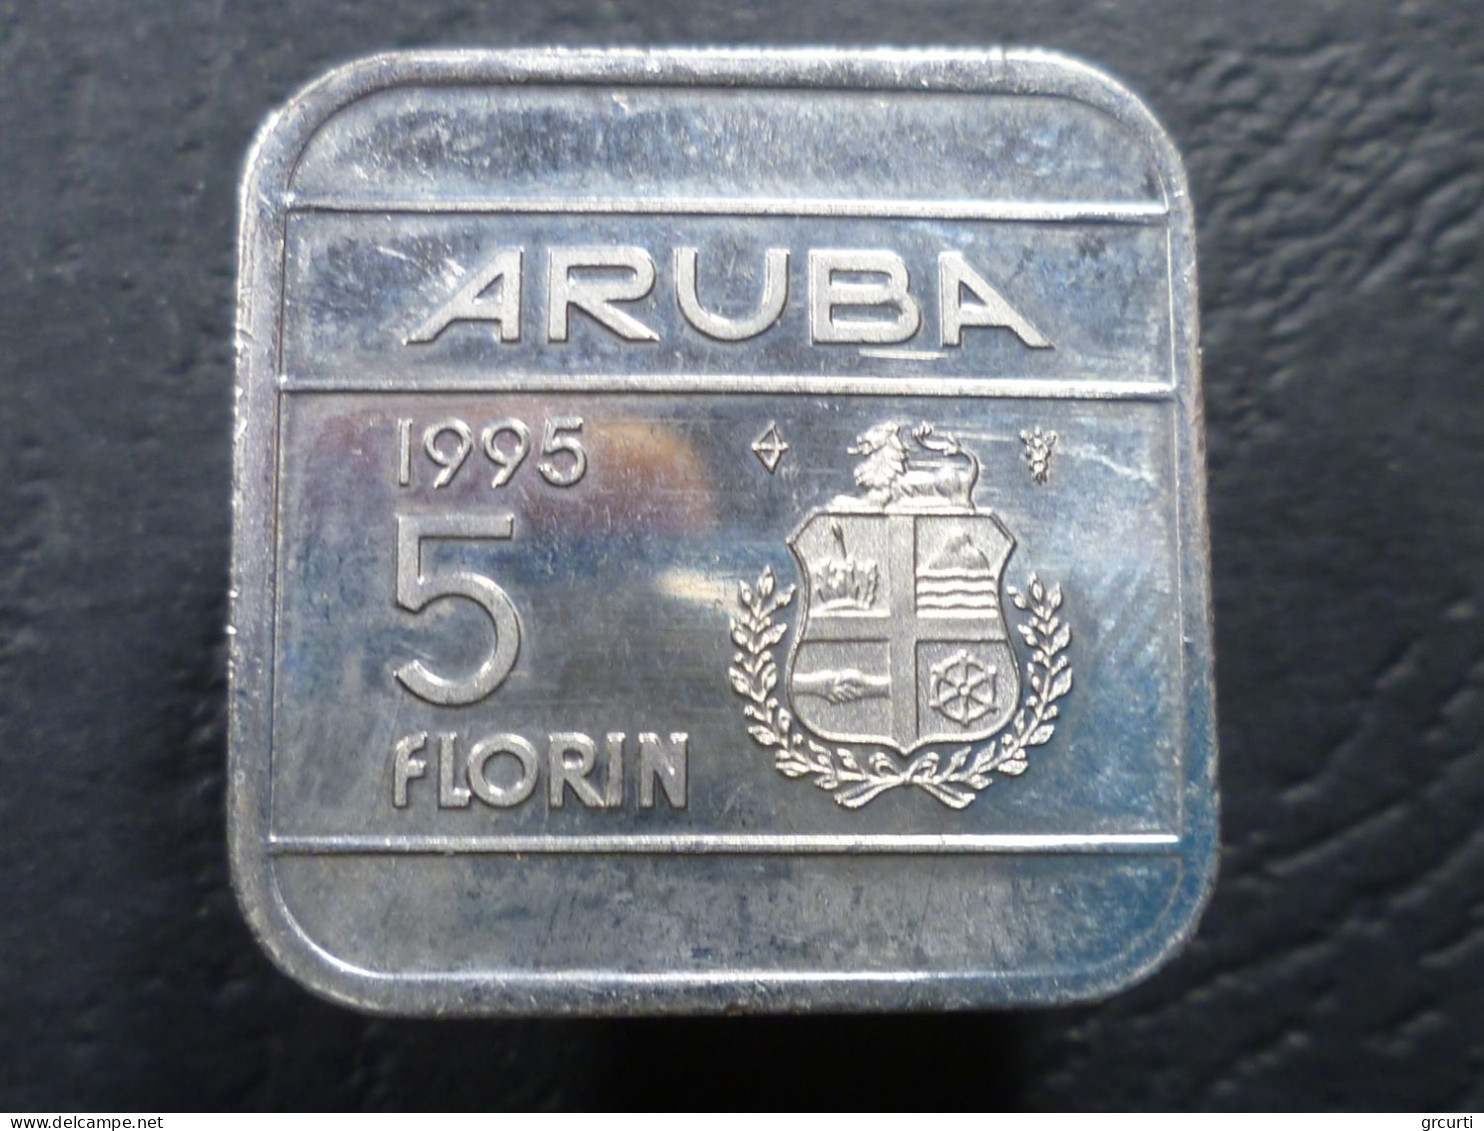 Aruba - Lotto di 20 monete in metalli comuni emesse fra il 1986 ed il 2008